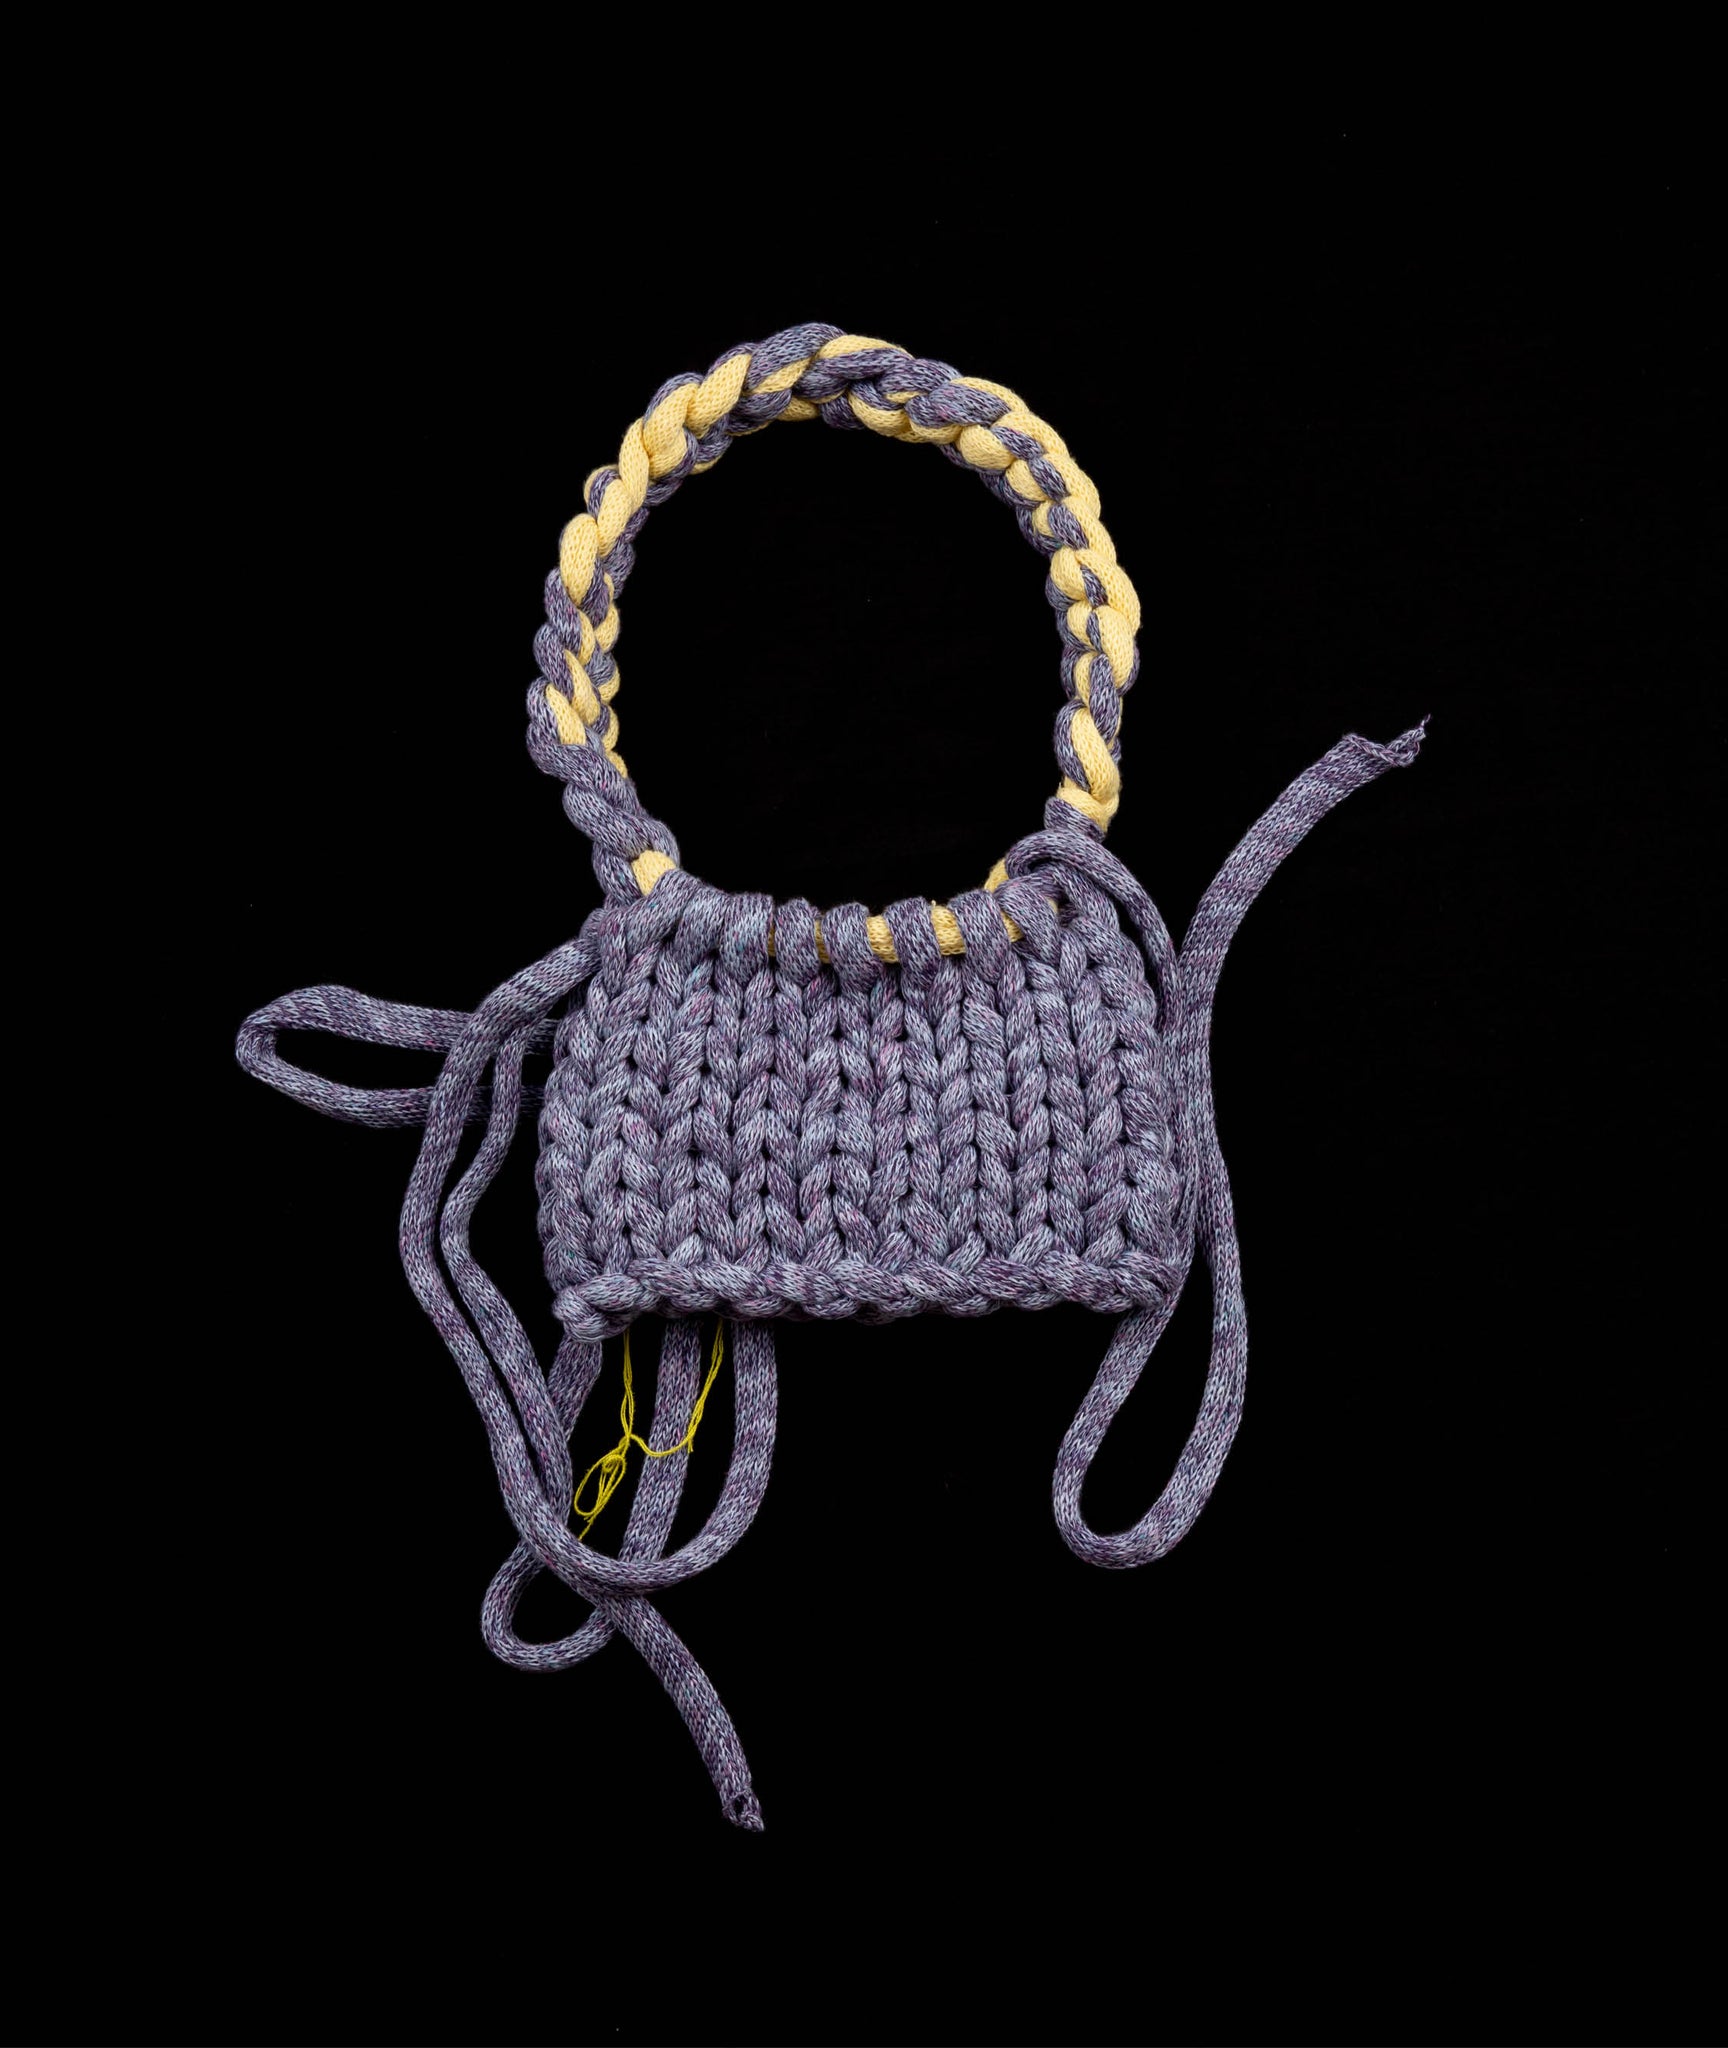 Mini knitted bag